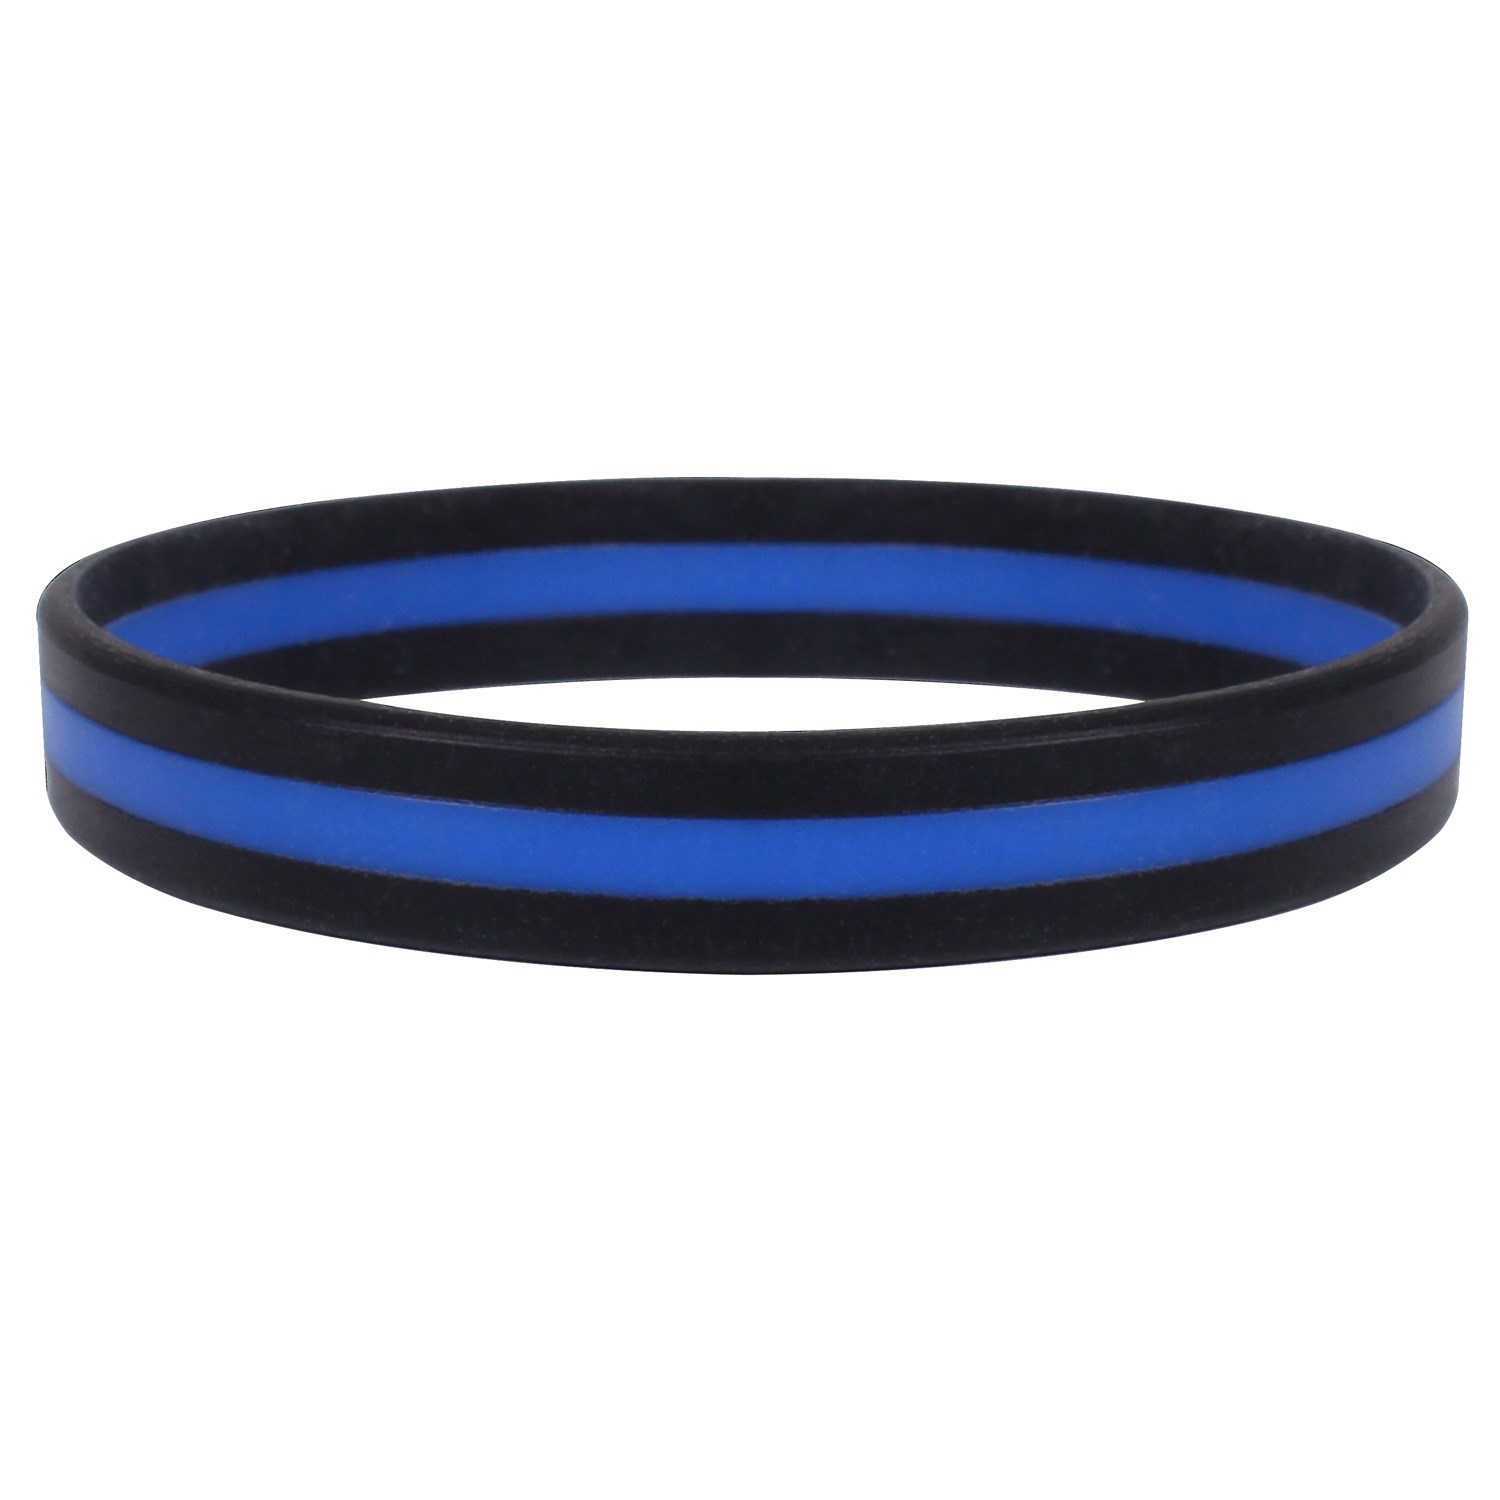 Thin Blue Line paracord bracelet police law enforcement